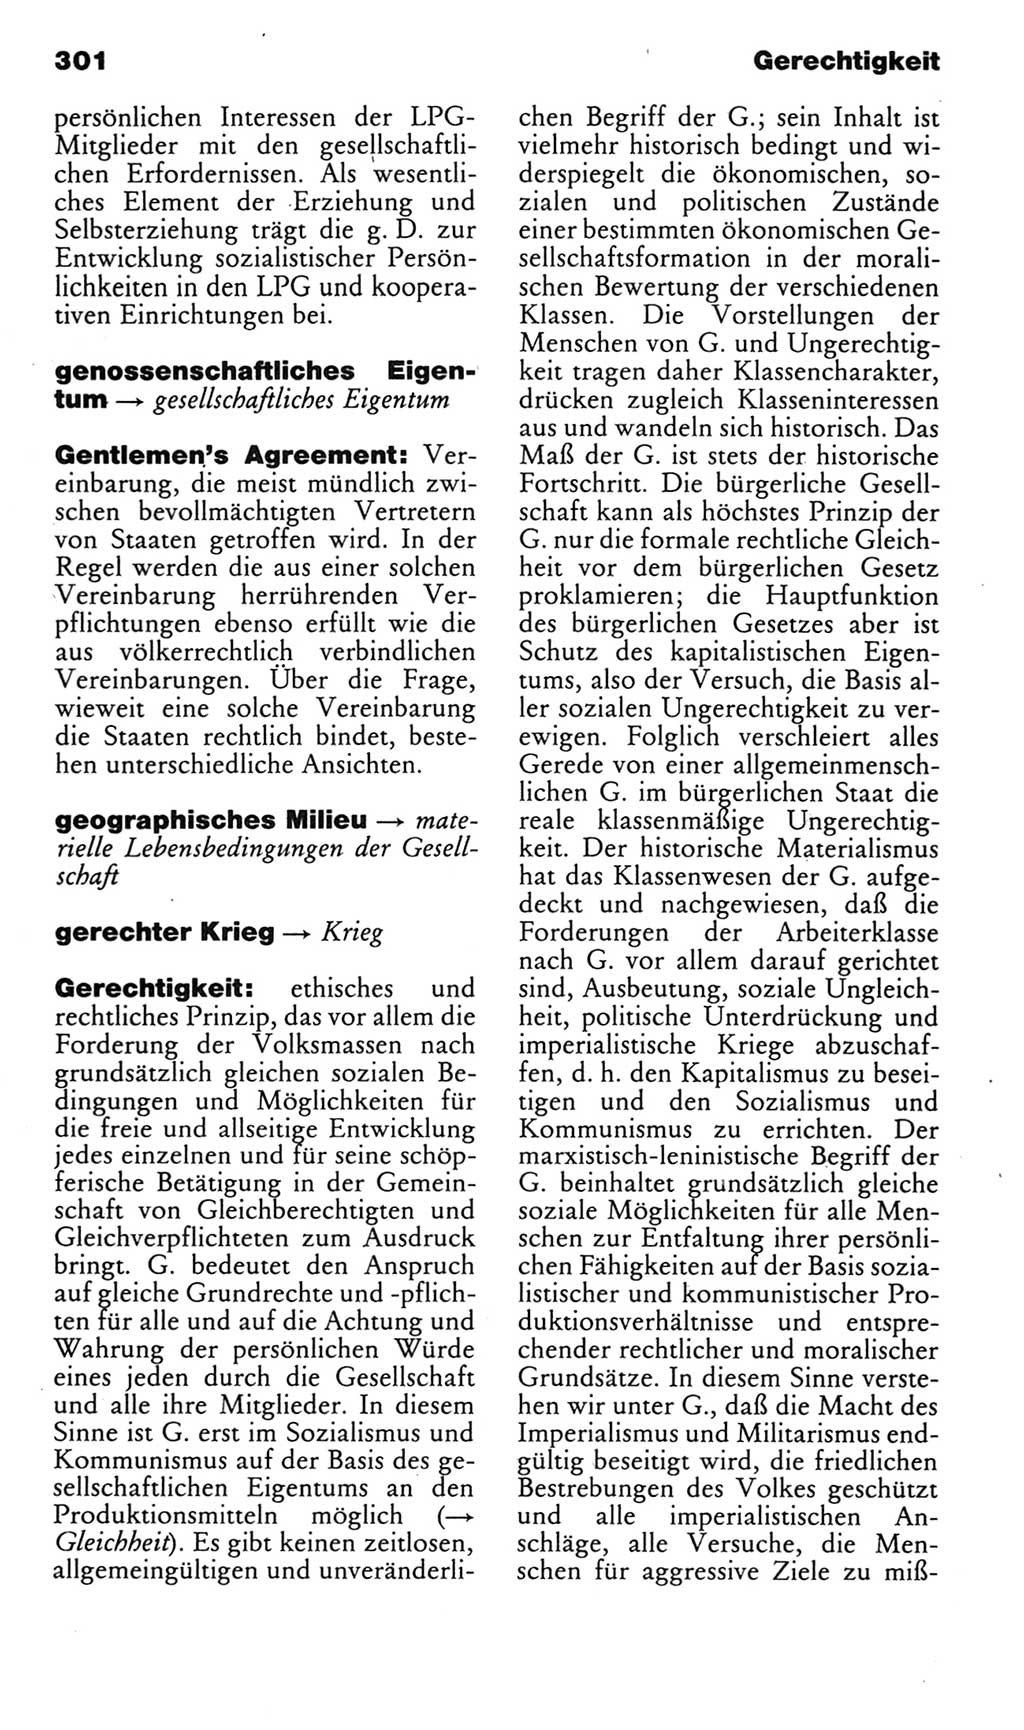 Kleines politisches Wörterbuch [Deutsche Demokratische Republik (DDR)] 1985, Seite 301 (Kl. pol. Wb. DDR 1985, S. 301)